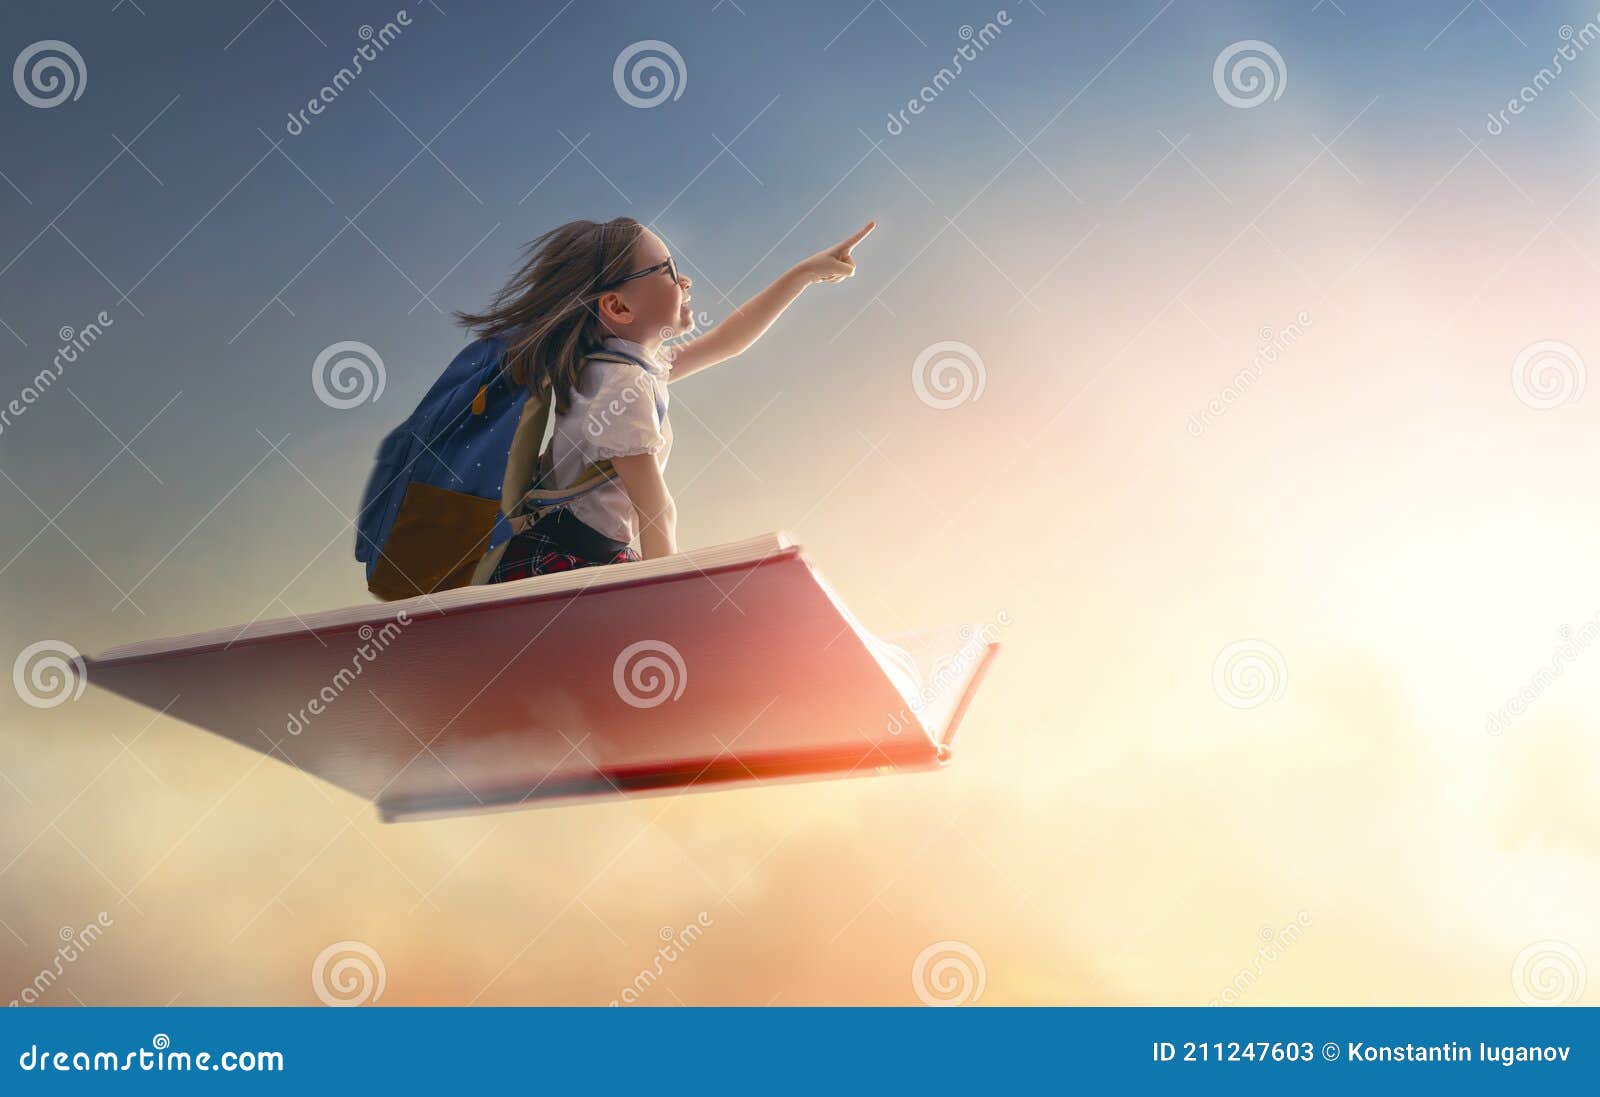 与幻想的儿童飞行在手提箱 库存图片. 图片 包括有 孩子, 日出, 童年, 夏天, 愉快, 行程, 作用 - 70230933